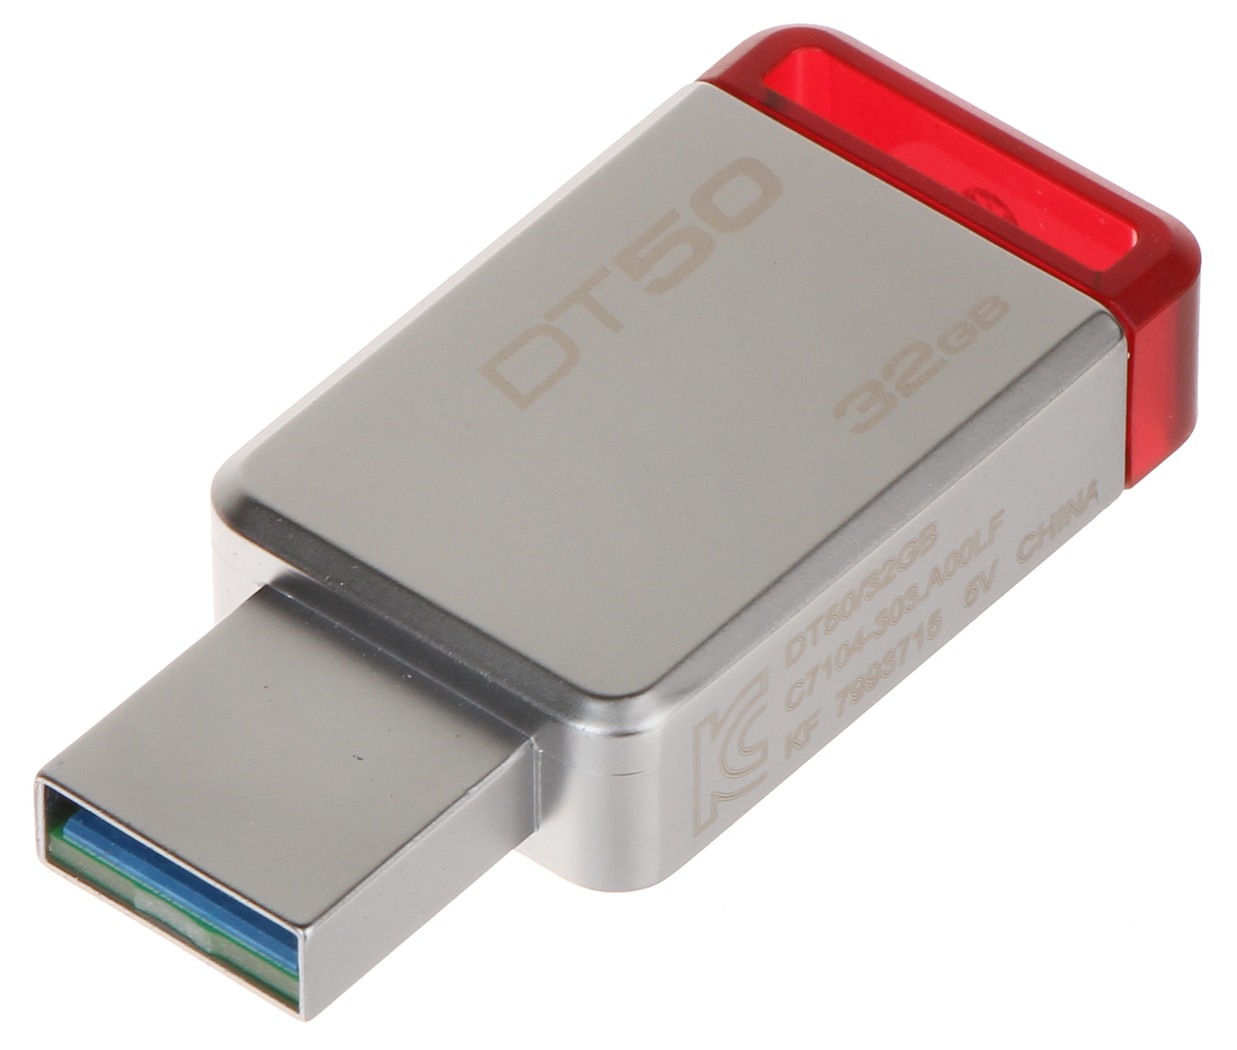 STICK USB FD-32/DT50-KING 32 GB USB 3.1/3.0 KINGSTON - Stick USB - Delta